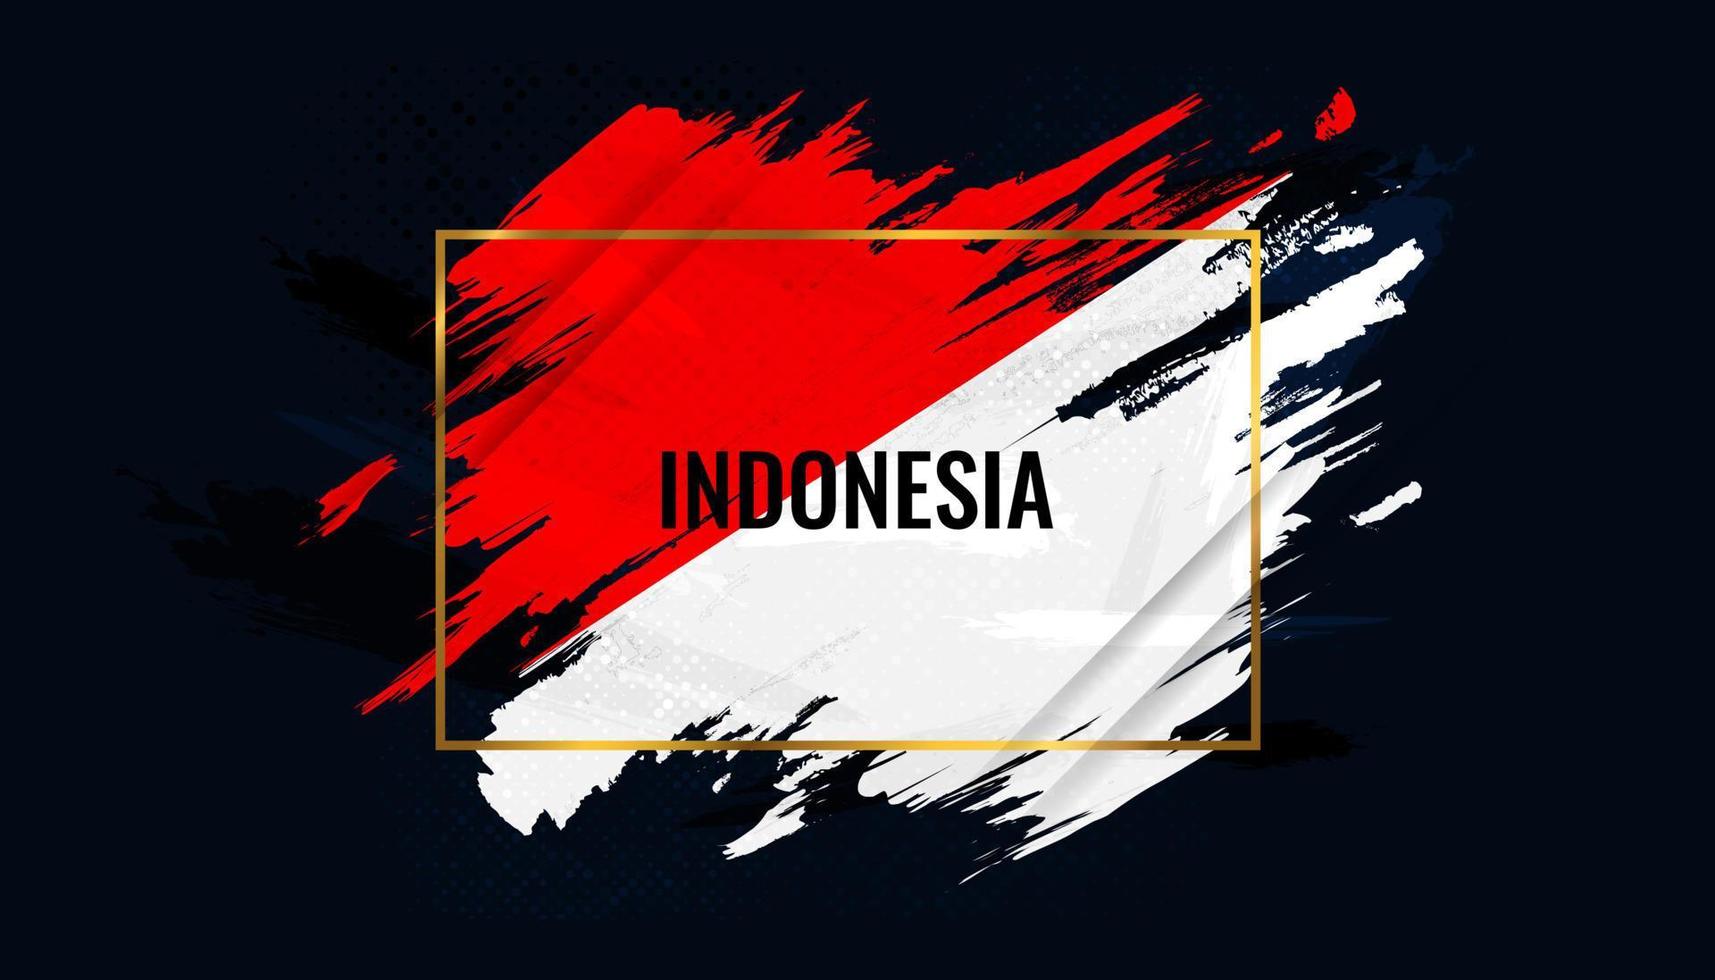 bandera de indonesia con concepto de pincel. feliz día de la independencia de indonesia. bandera de indonesia en estilo grunge vector